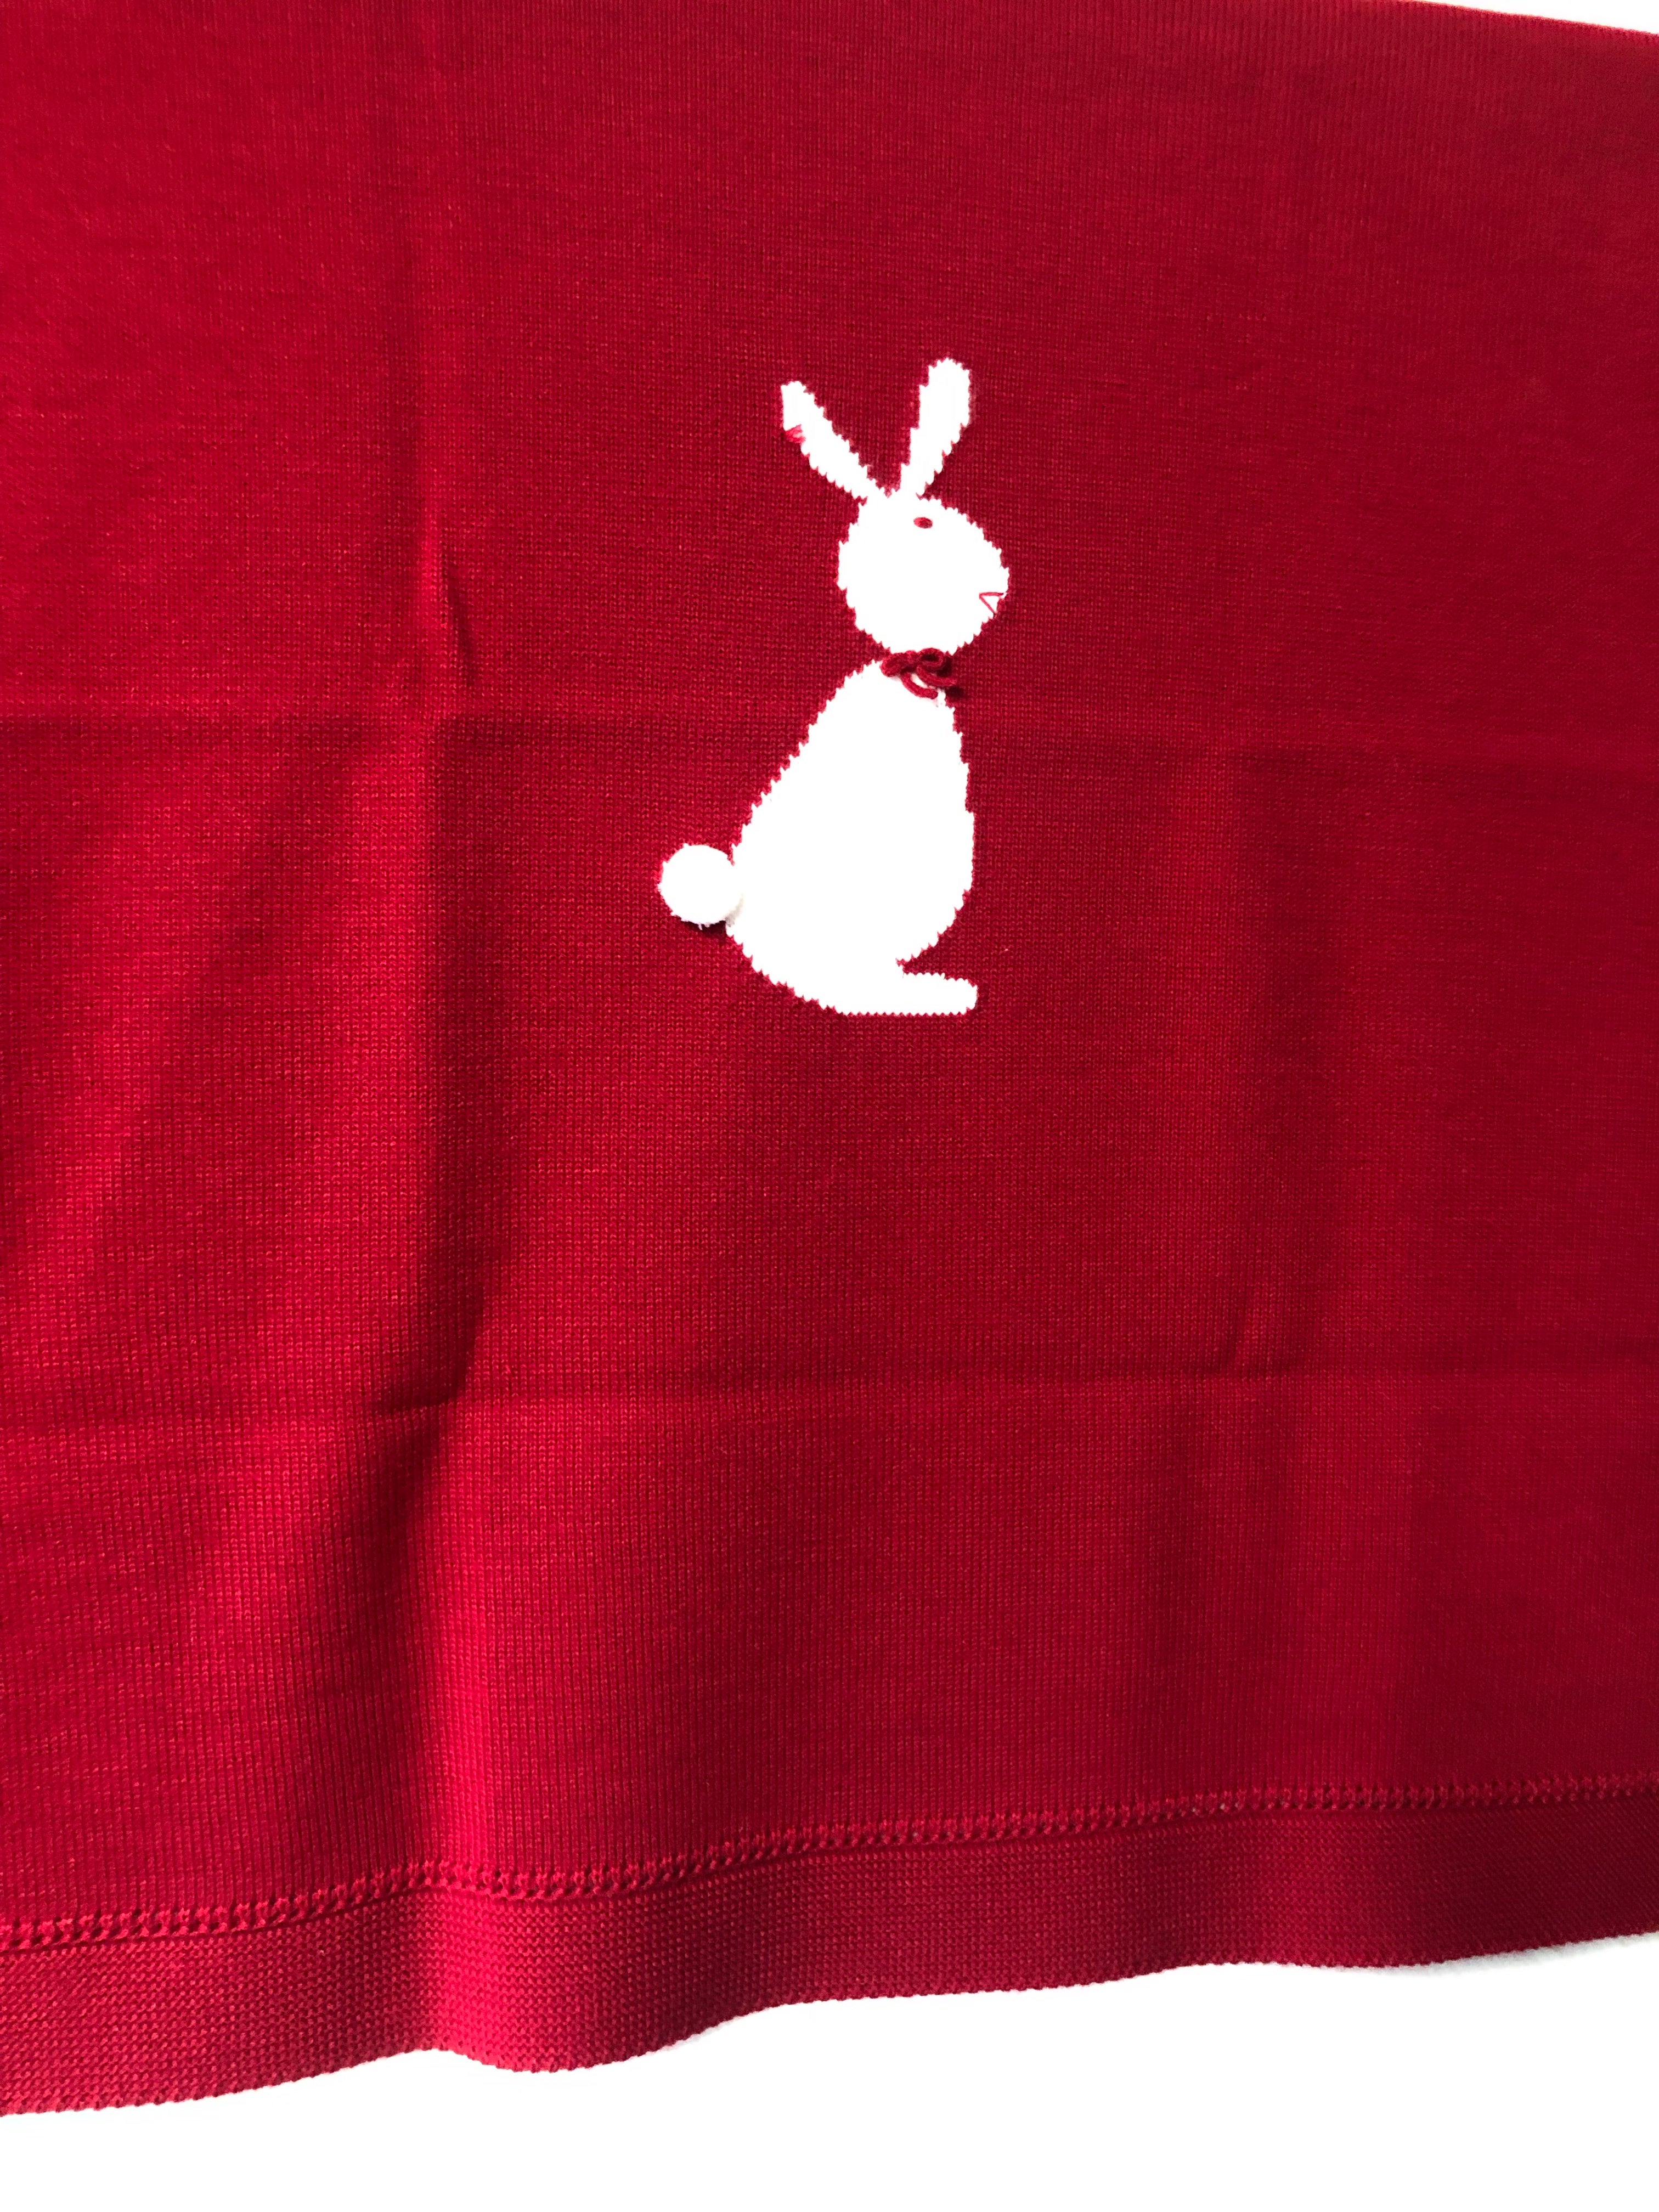 Granlei Fine Knitted Bunny Design Blankets